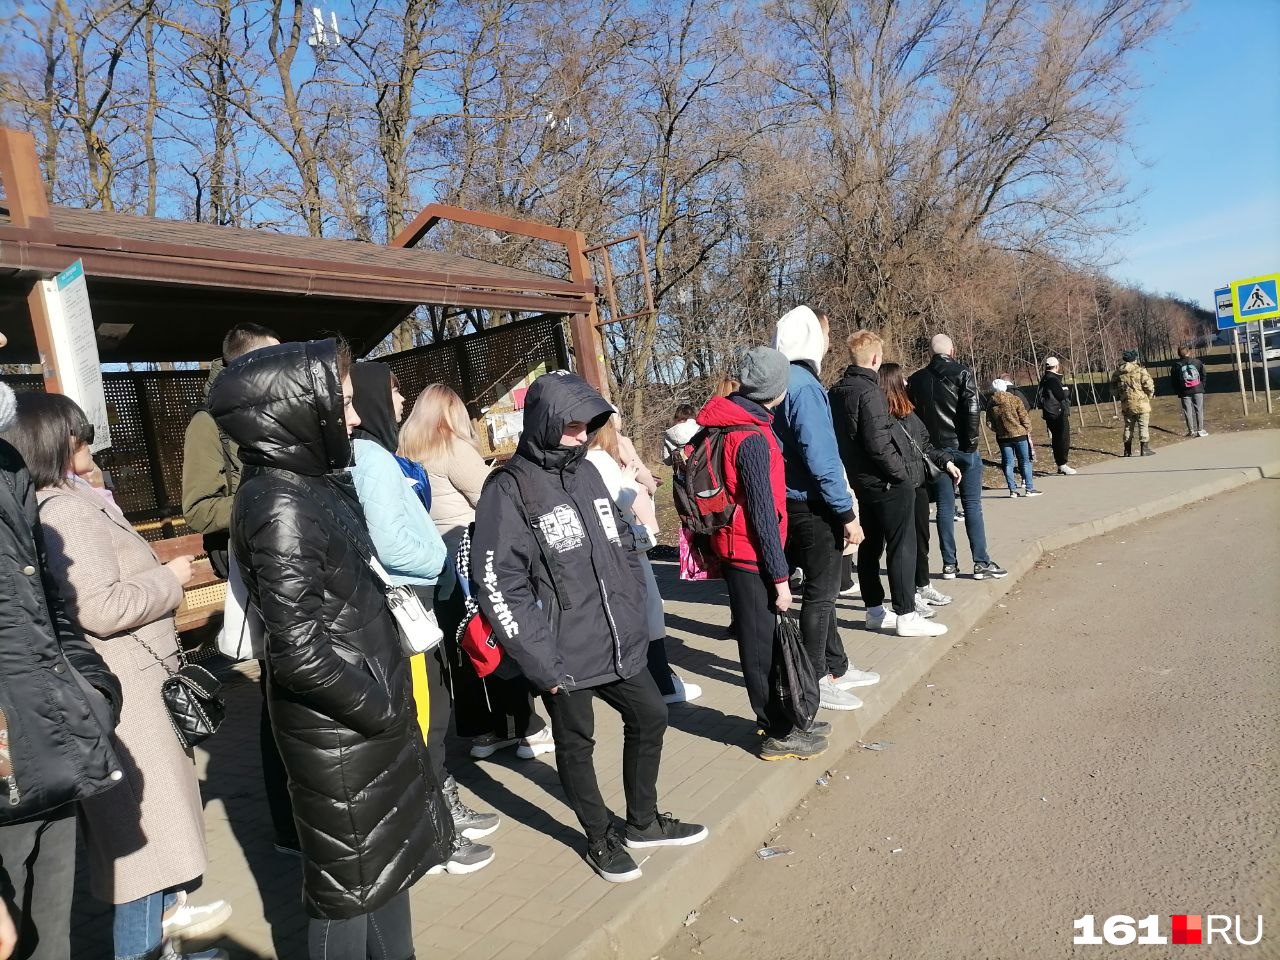 Ростовчане провели в ожидании хотя бы одного автобуса в центр более 40 минут